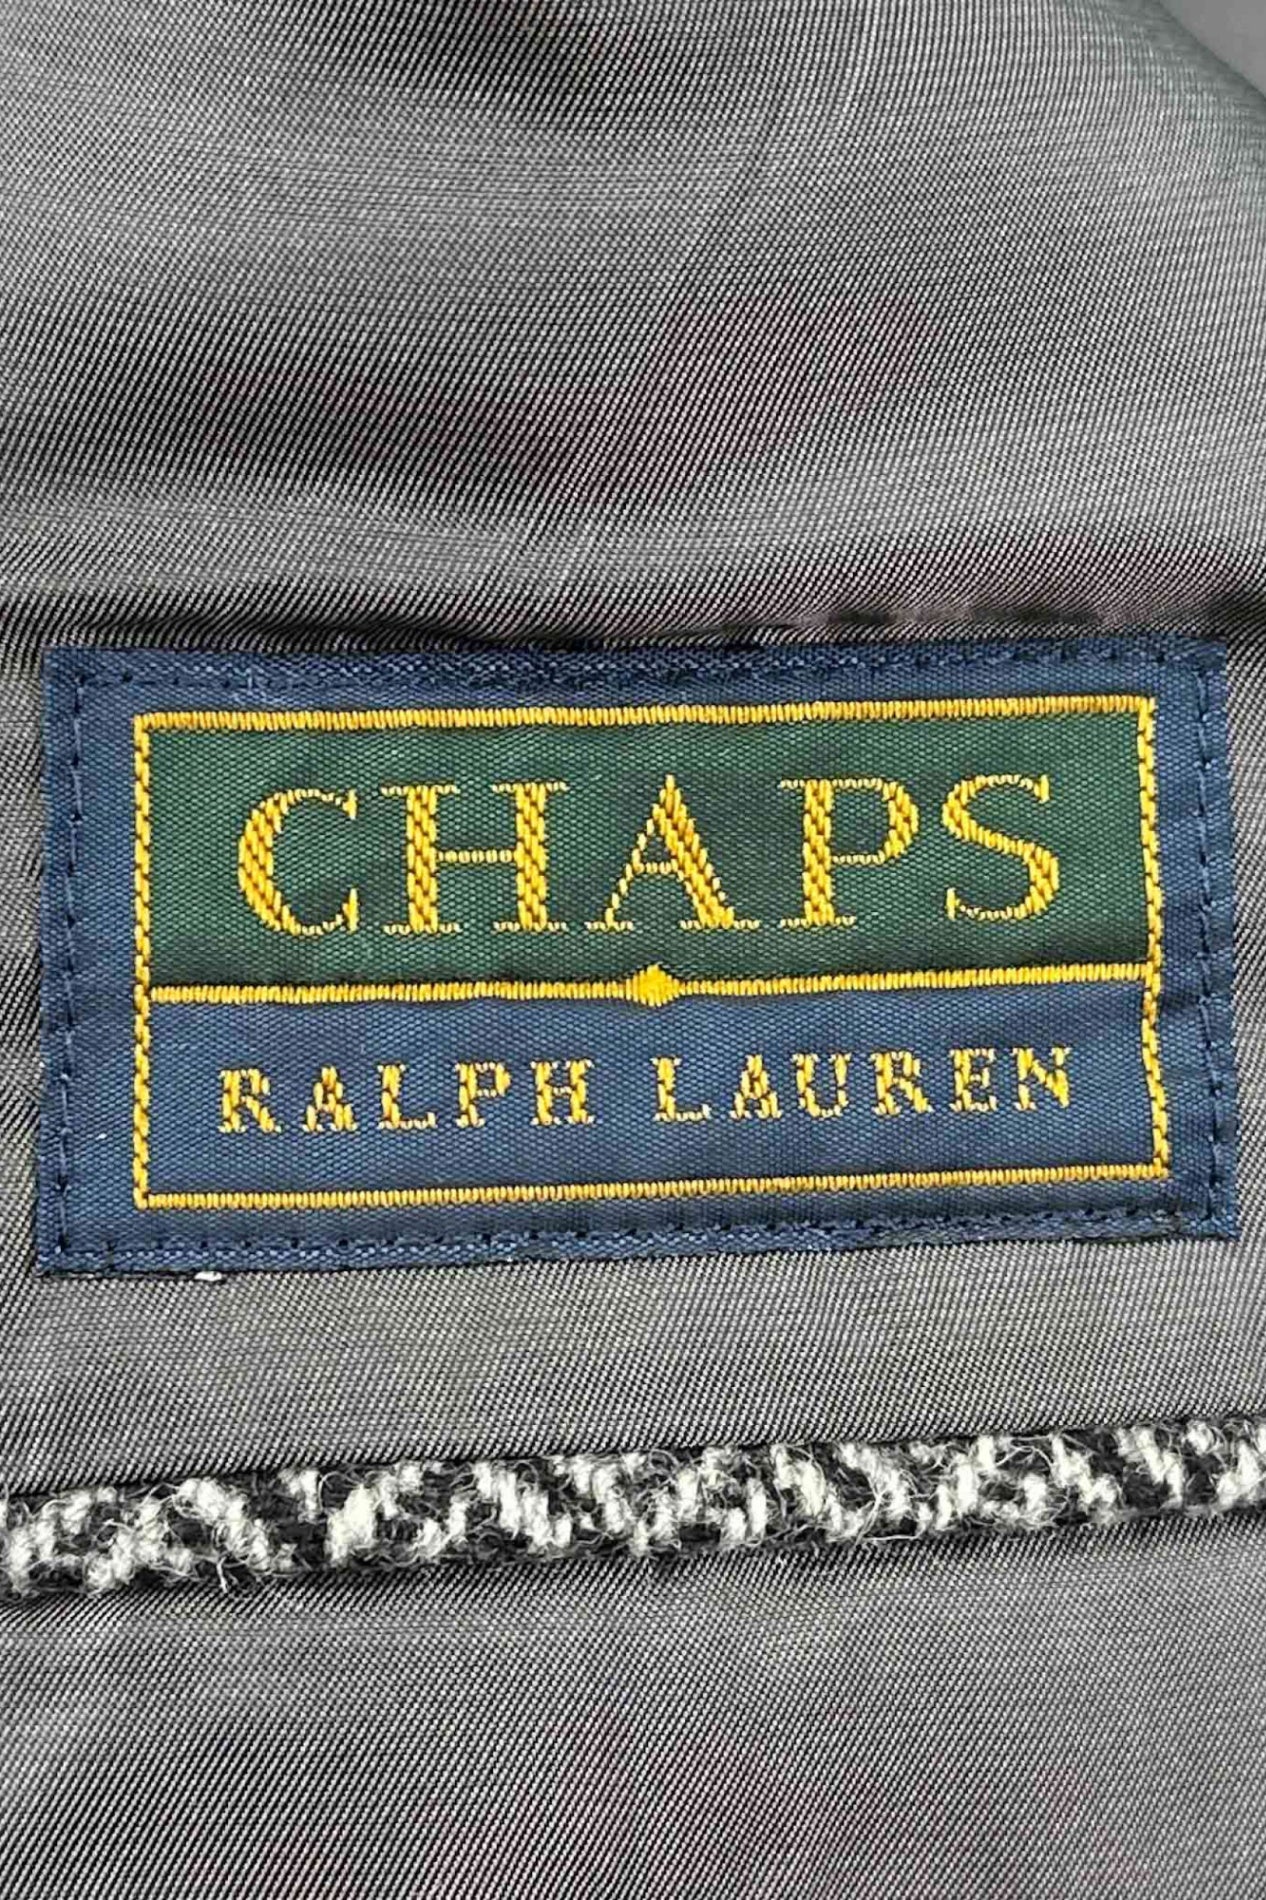 CHAPS RALPH LAUREN gray jacket